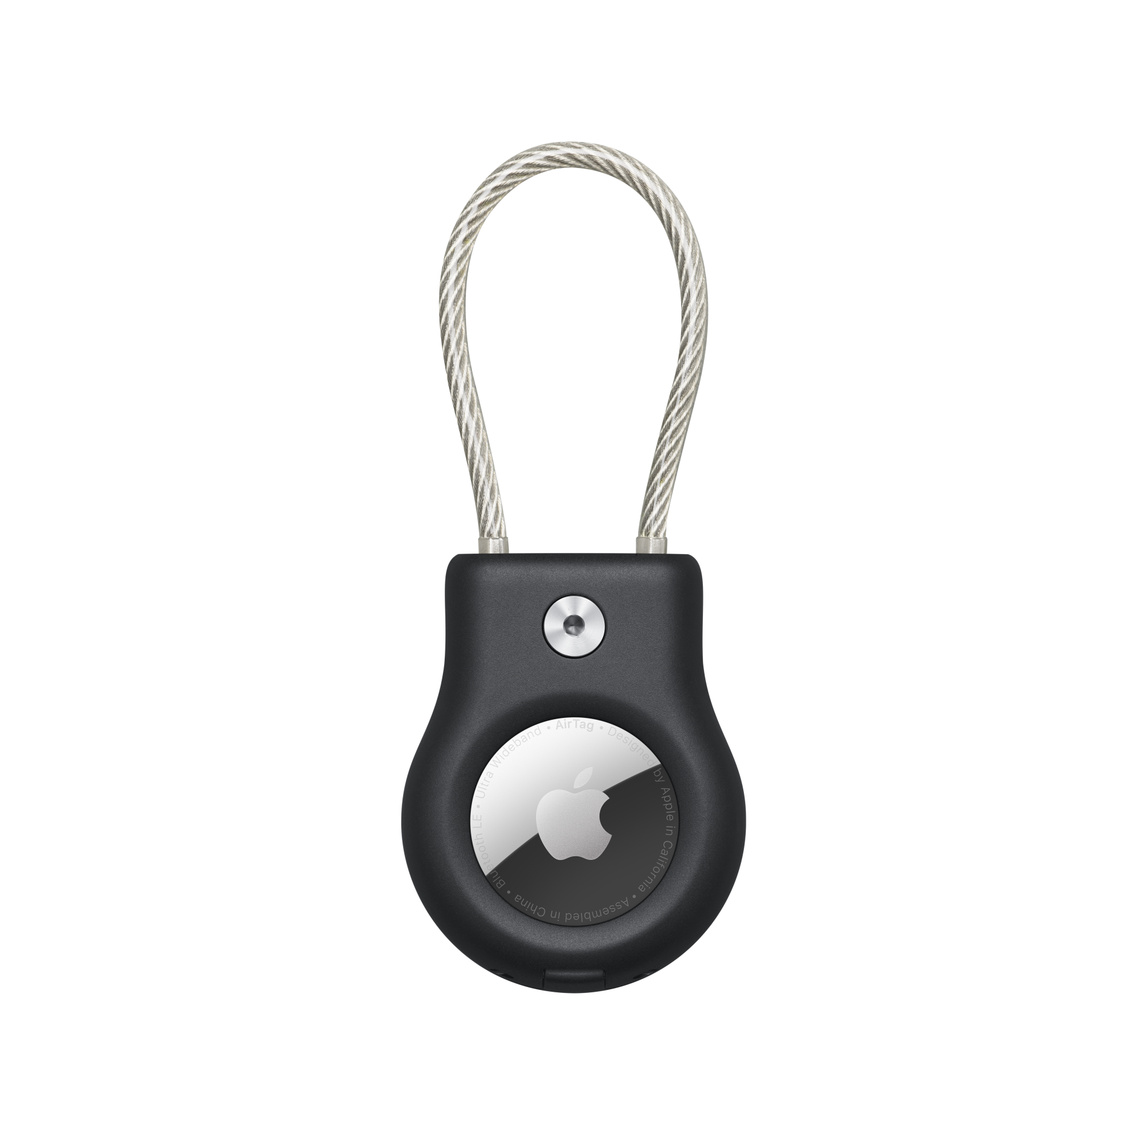 Svart Belkin Secure Holder med vaierlås med en AirTag sikkert på plass og synlig Apple-logo.